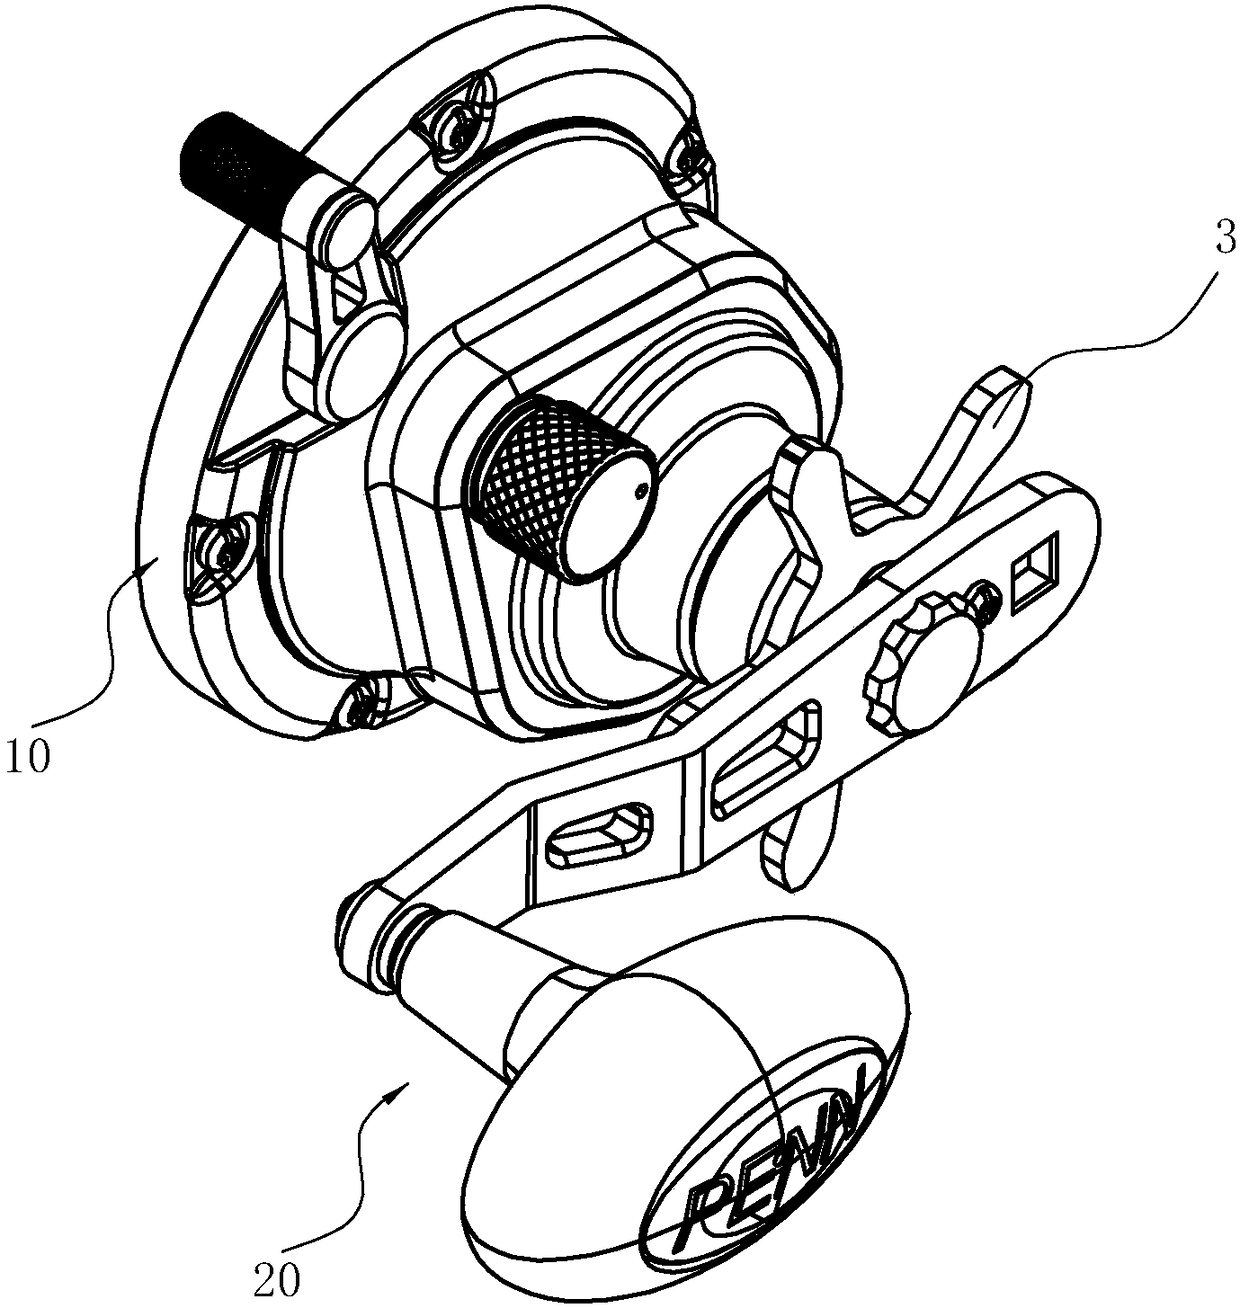 Braking device for fishing reel